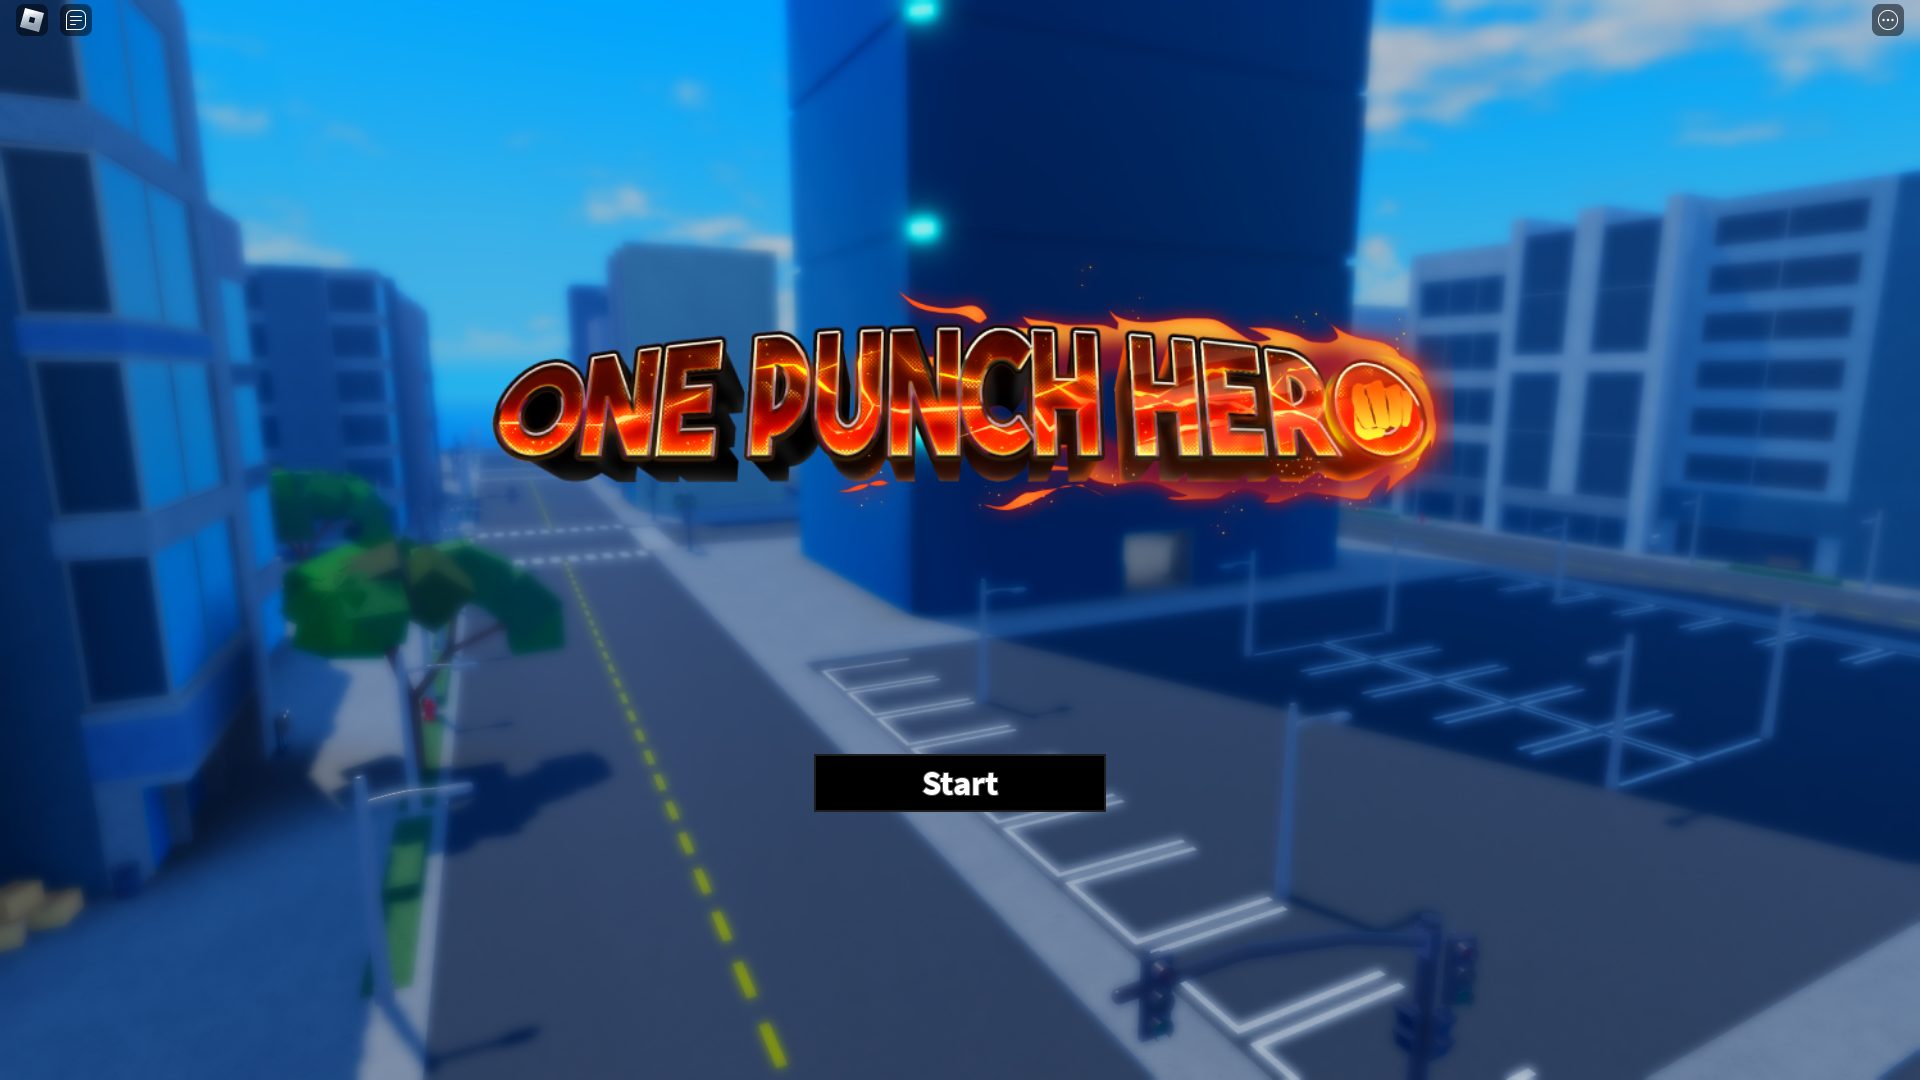 One Punch Hero start screen